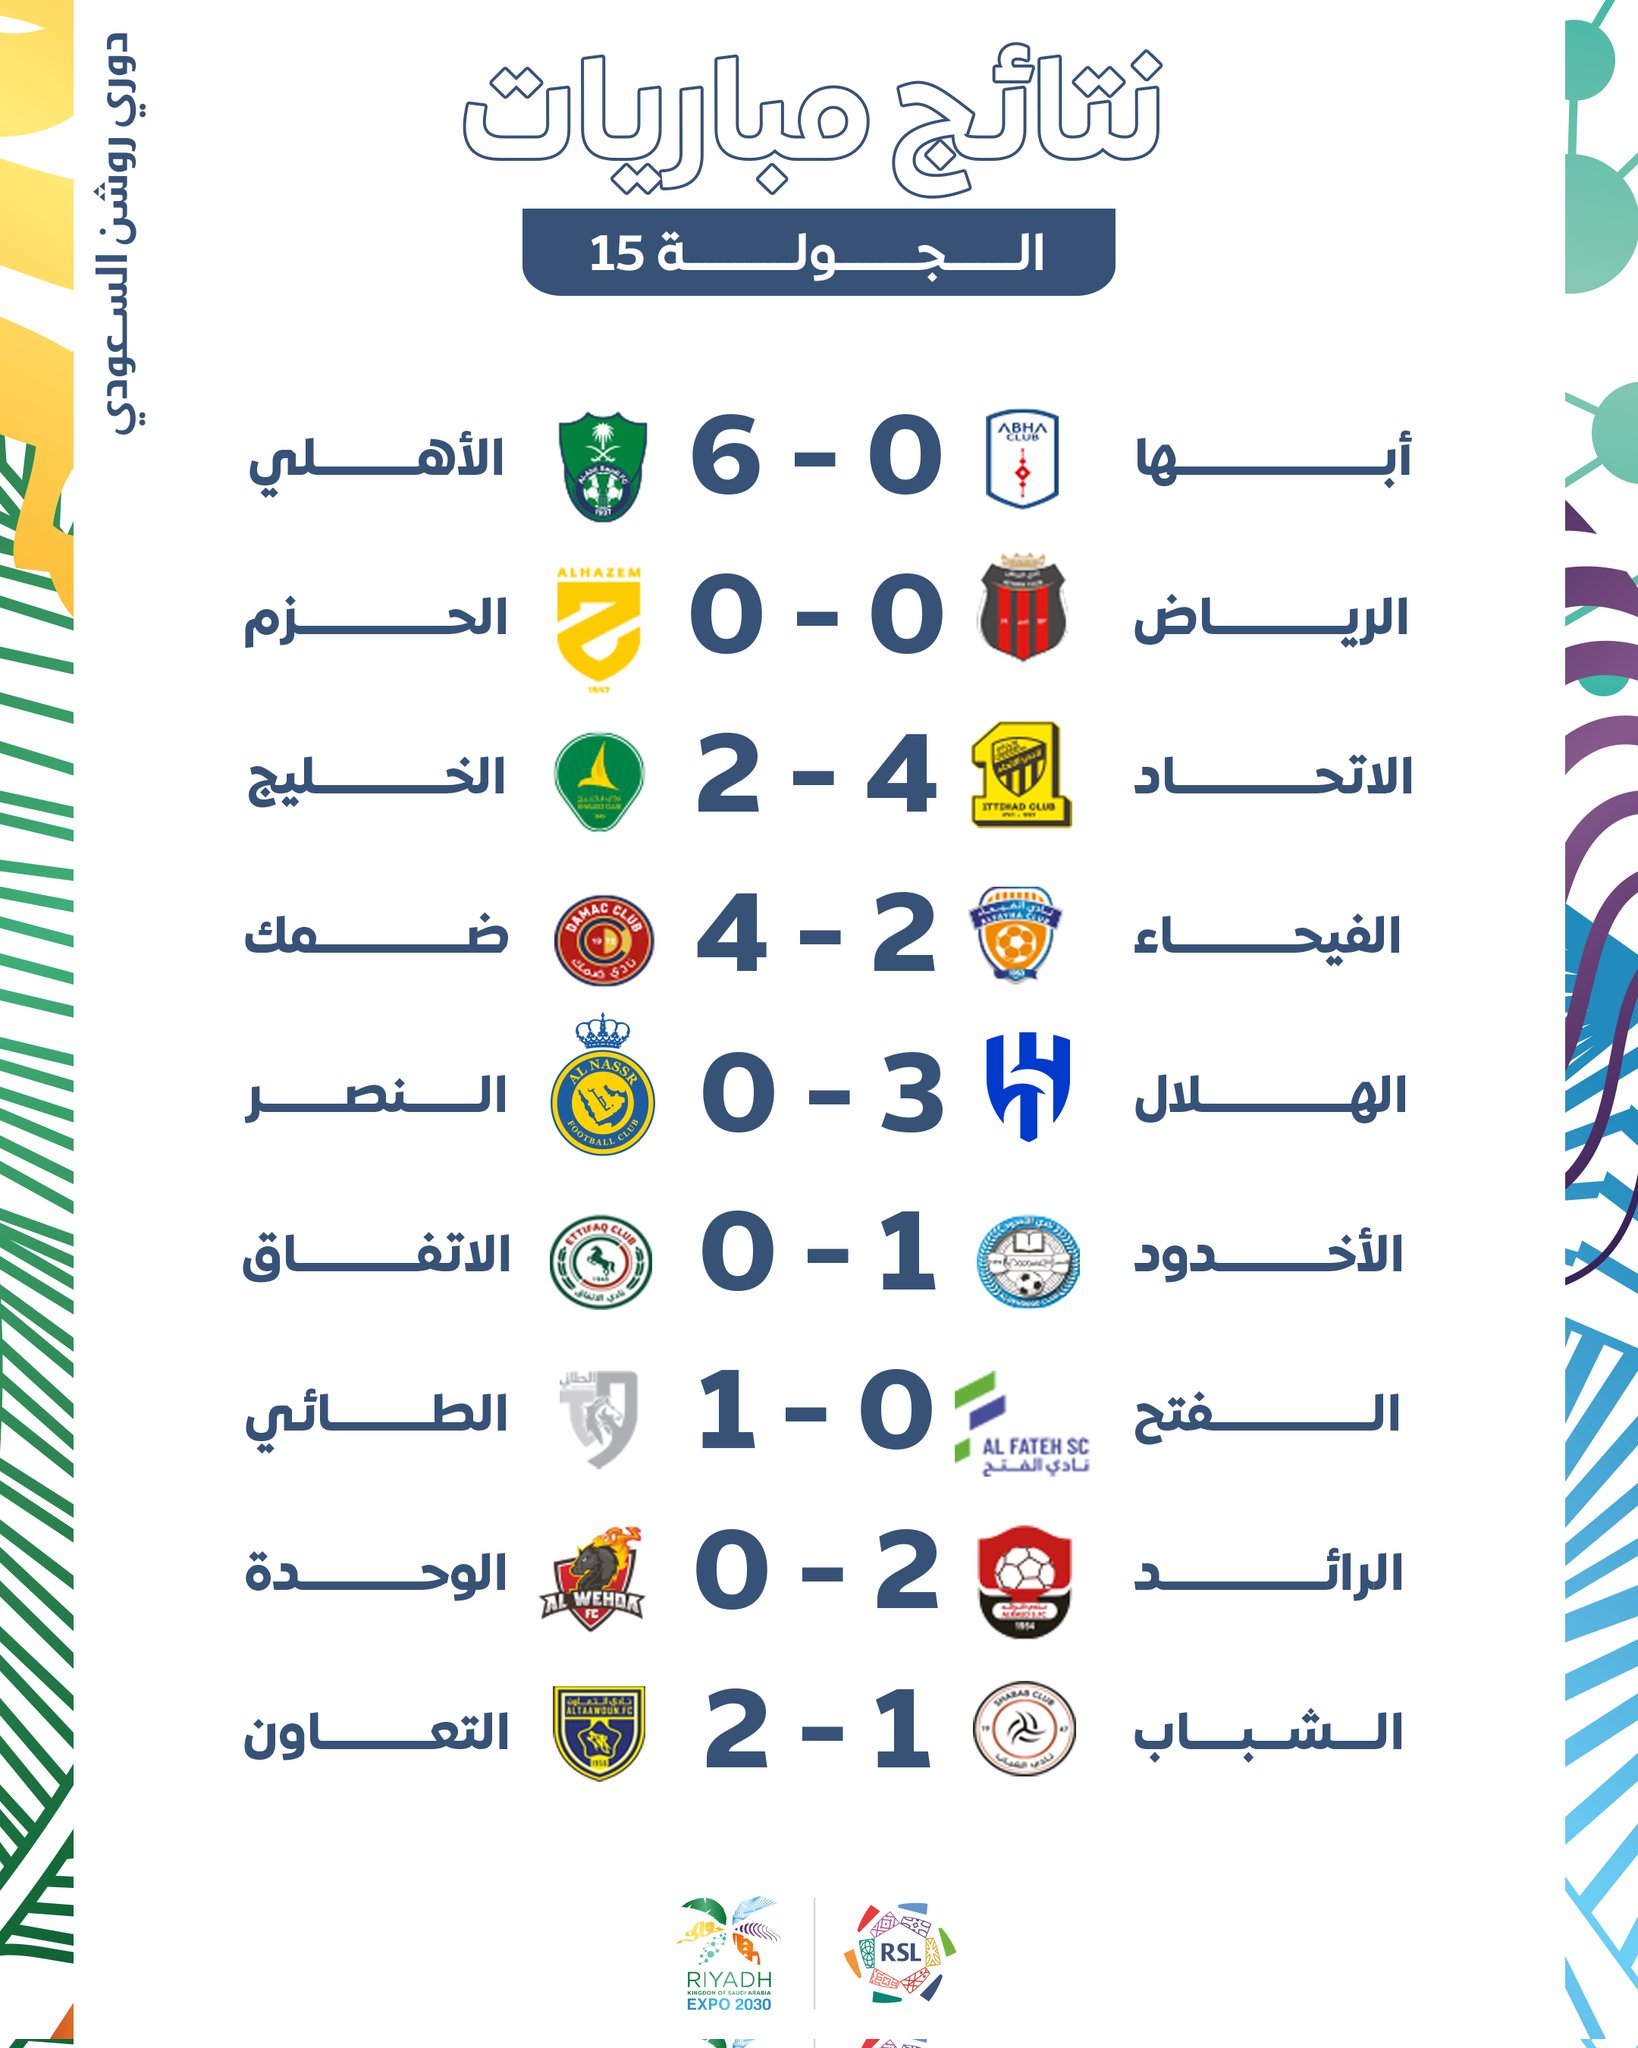 نتائج الجولة الـ15 للدوري السعودي